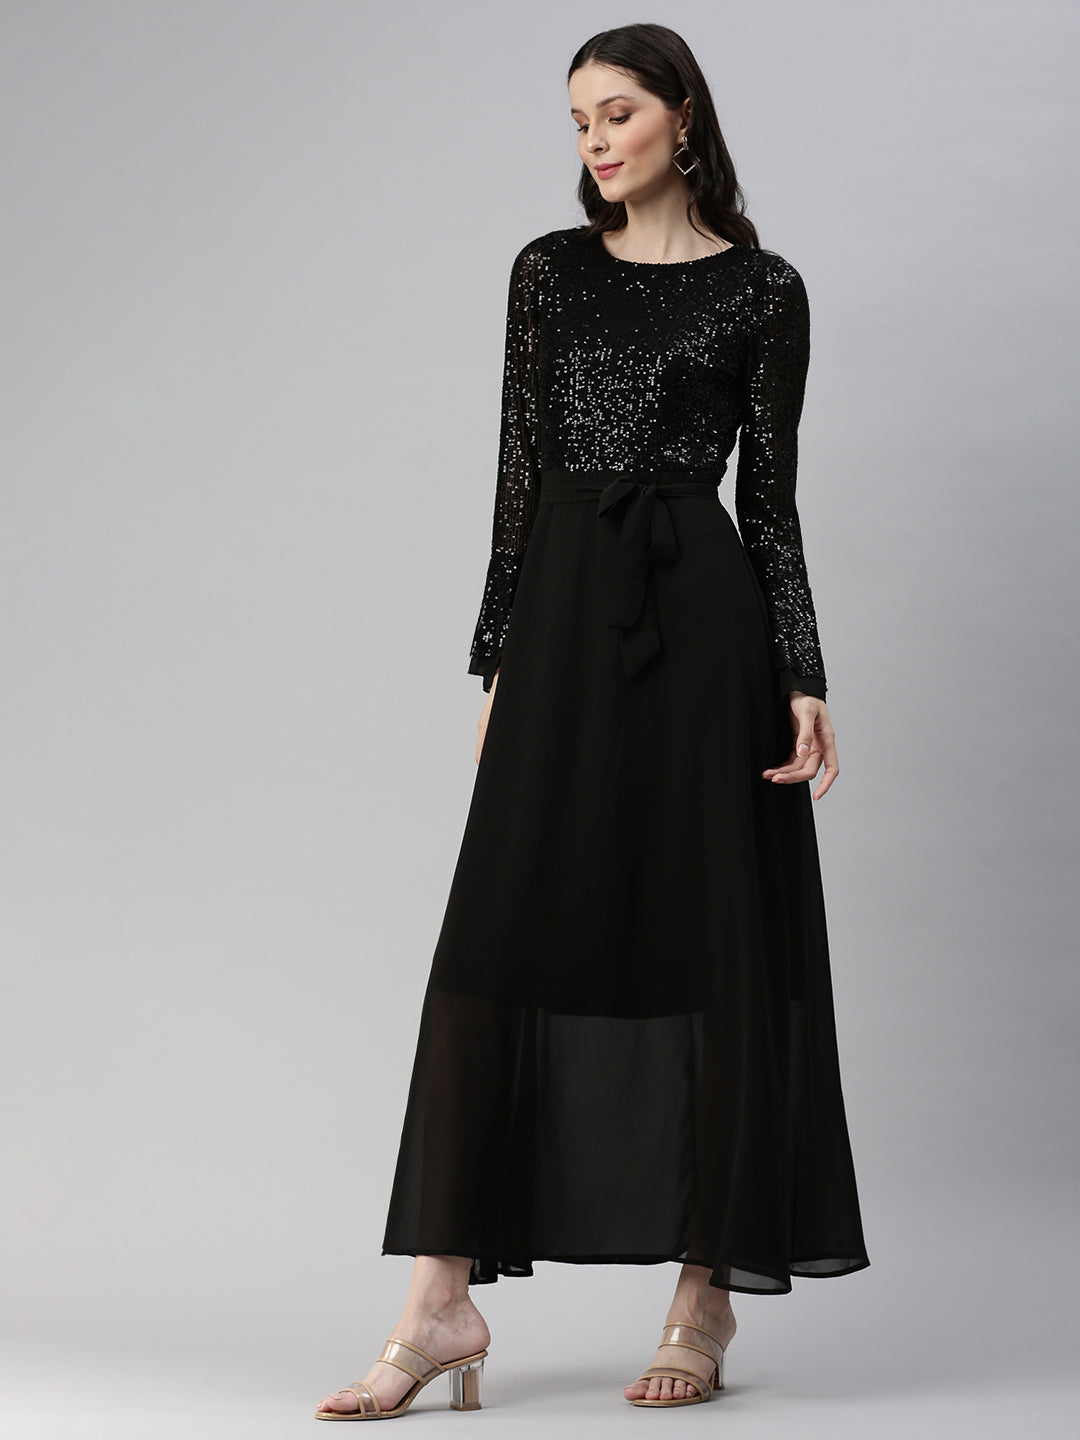 Women's Embellished Black Dress